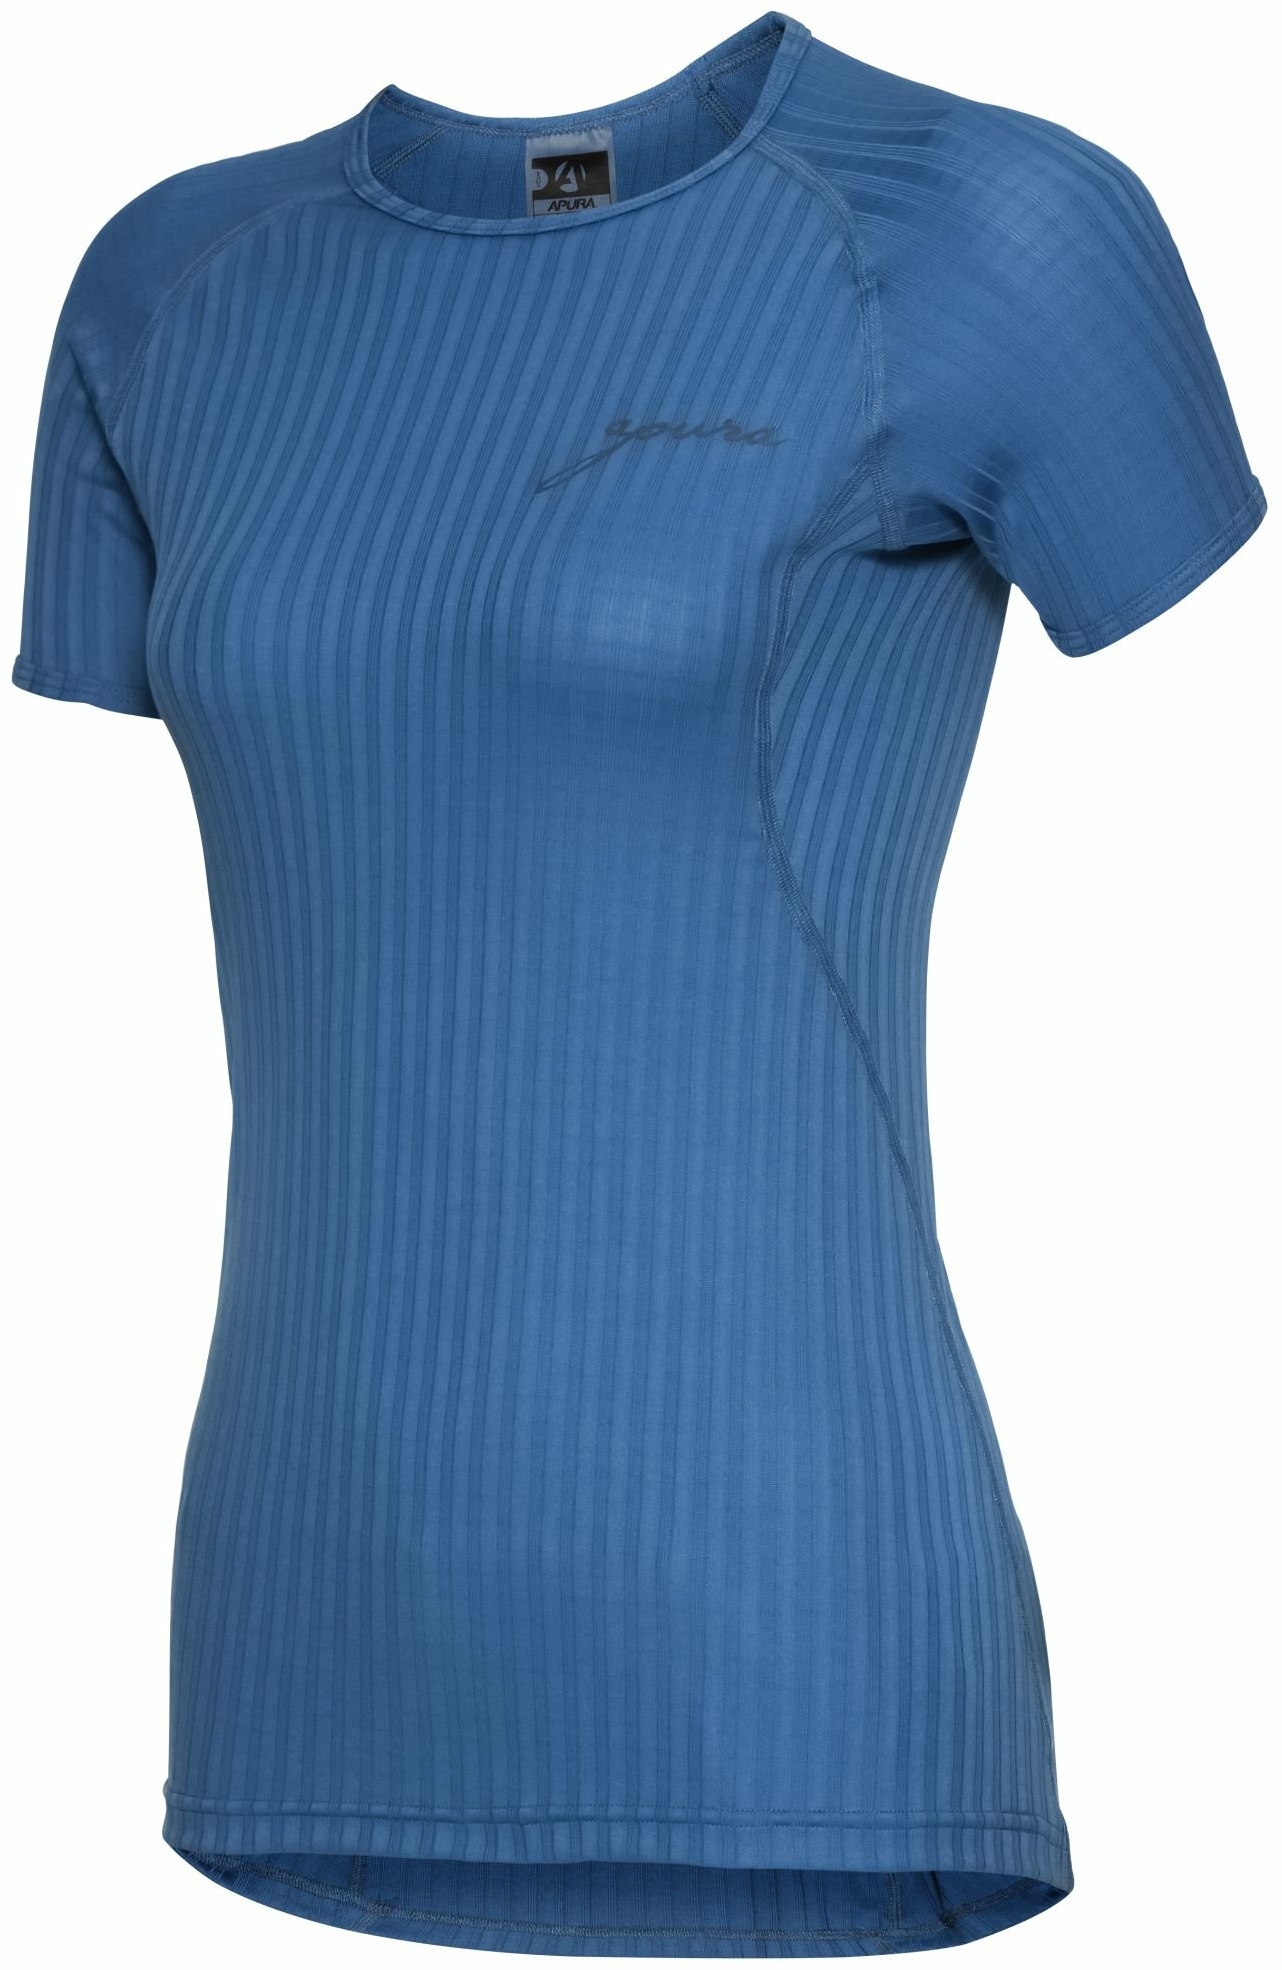 Bekleidung/Unterwäsche: Apura  Damen Unterhemd Kurzarm Ory M 